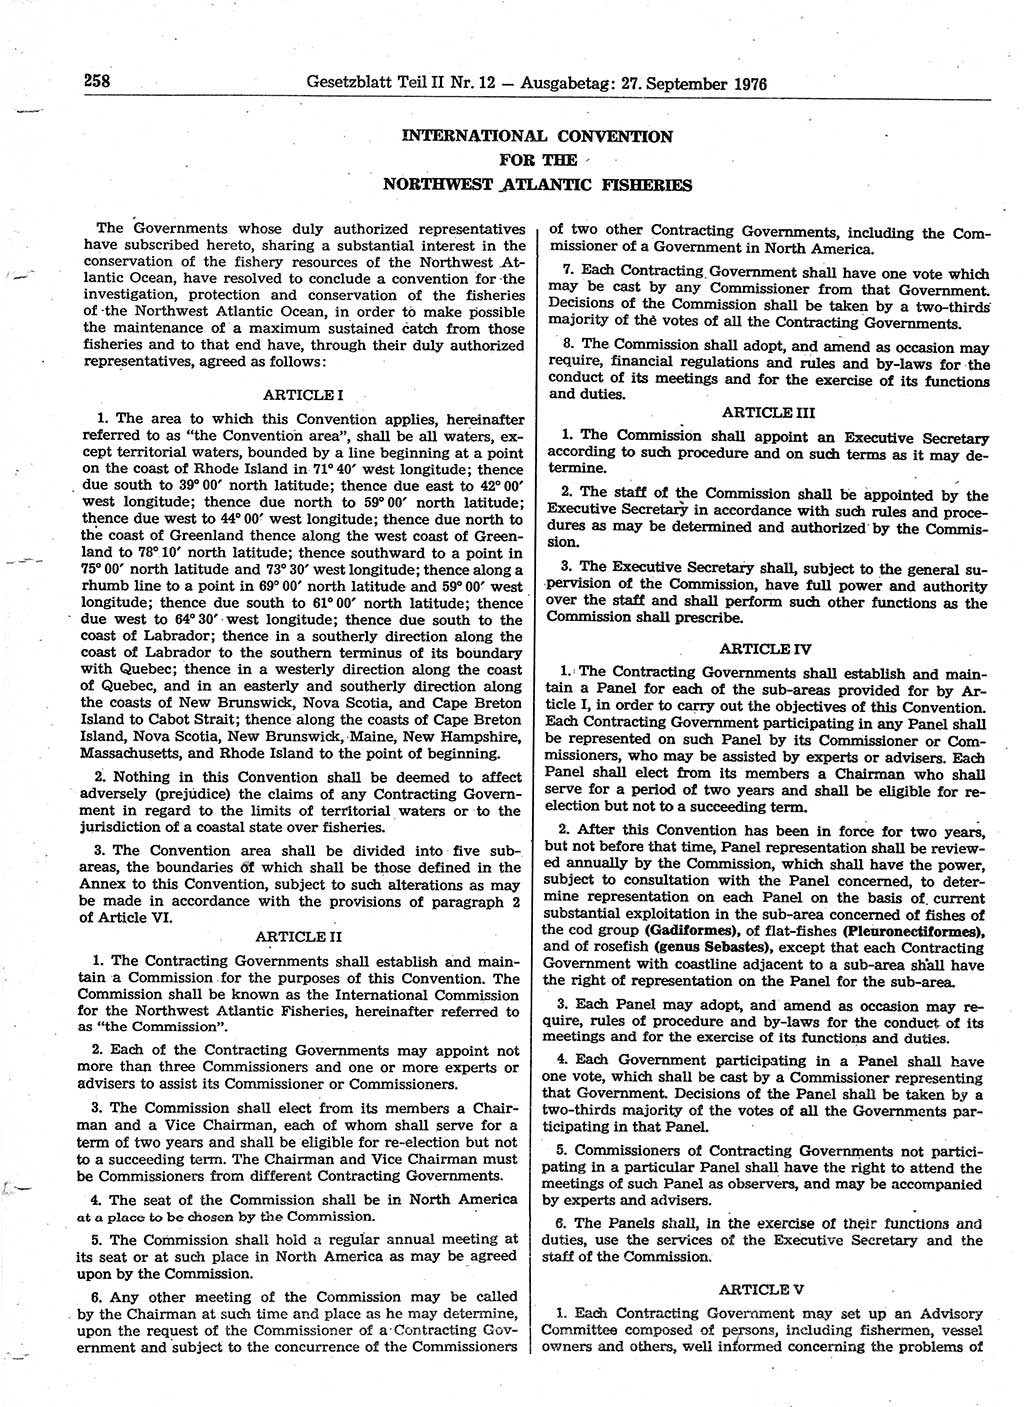 Gesetzblatt (GBl.) der Deutschen Demokratischen Republik (DDR) Teil ⅠⅠ 1976, Seite 258 (GBl. DDR ⅠⅠ 1976, S. 258)